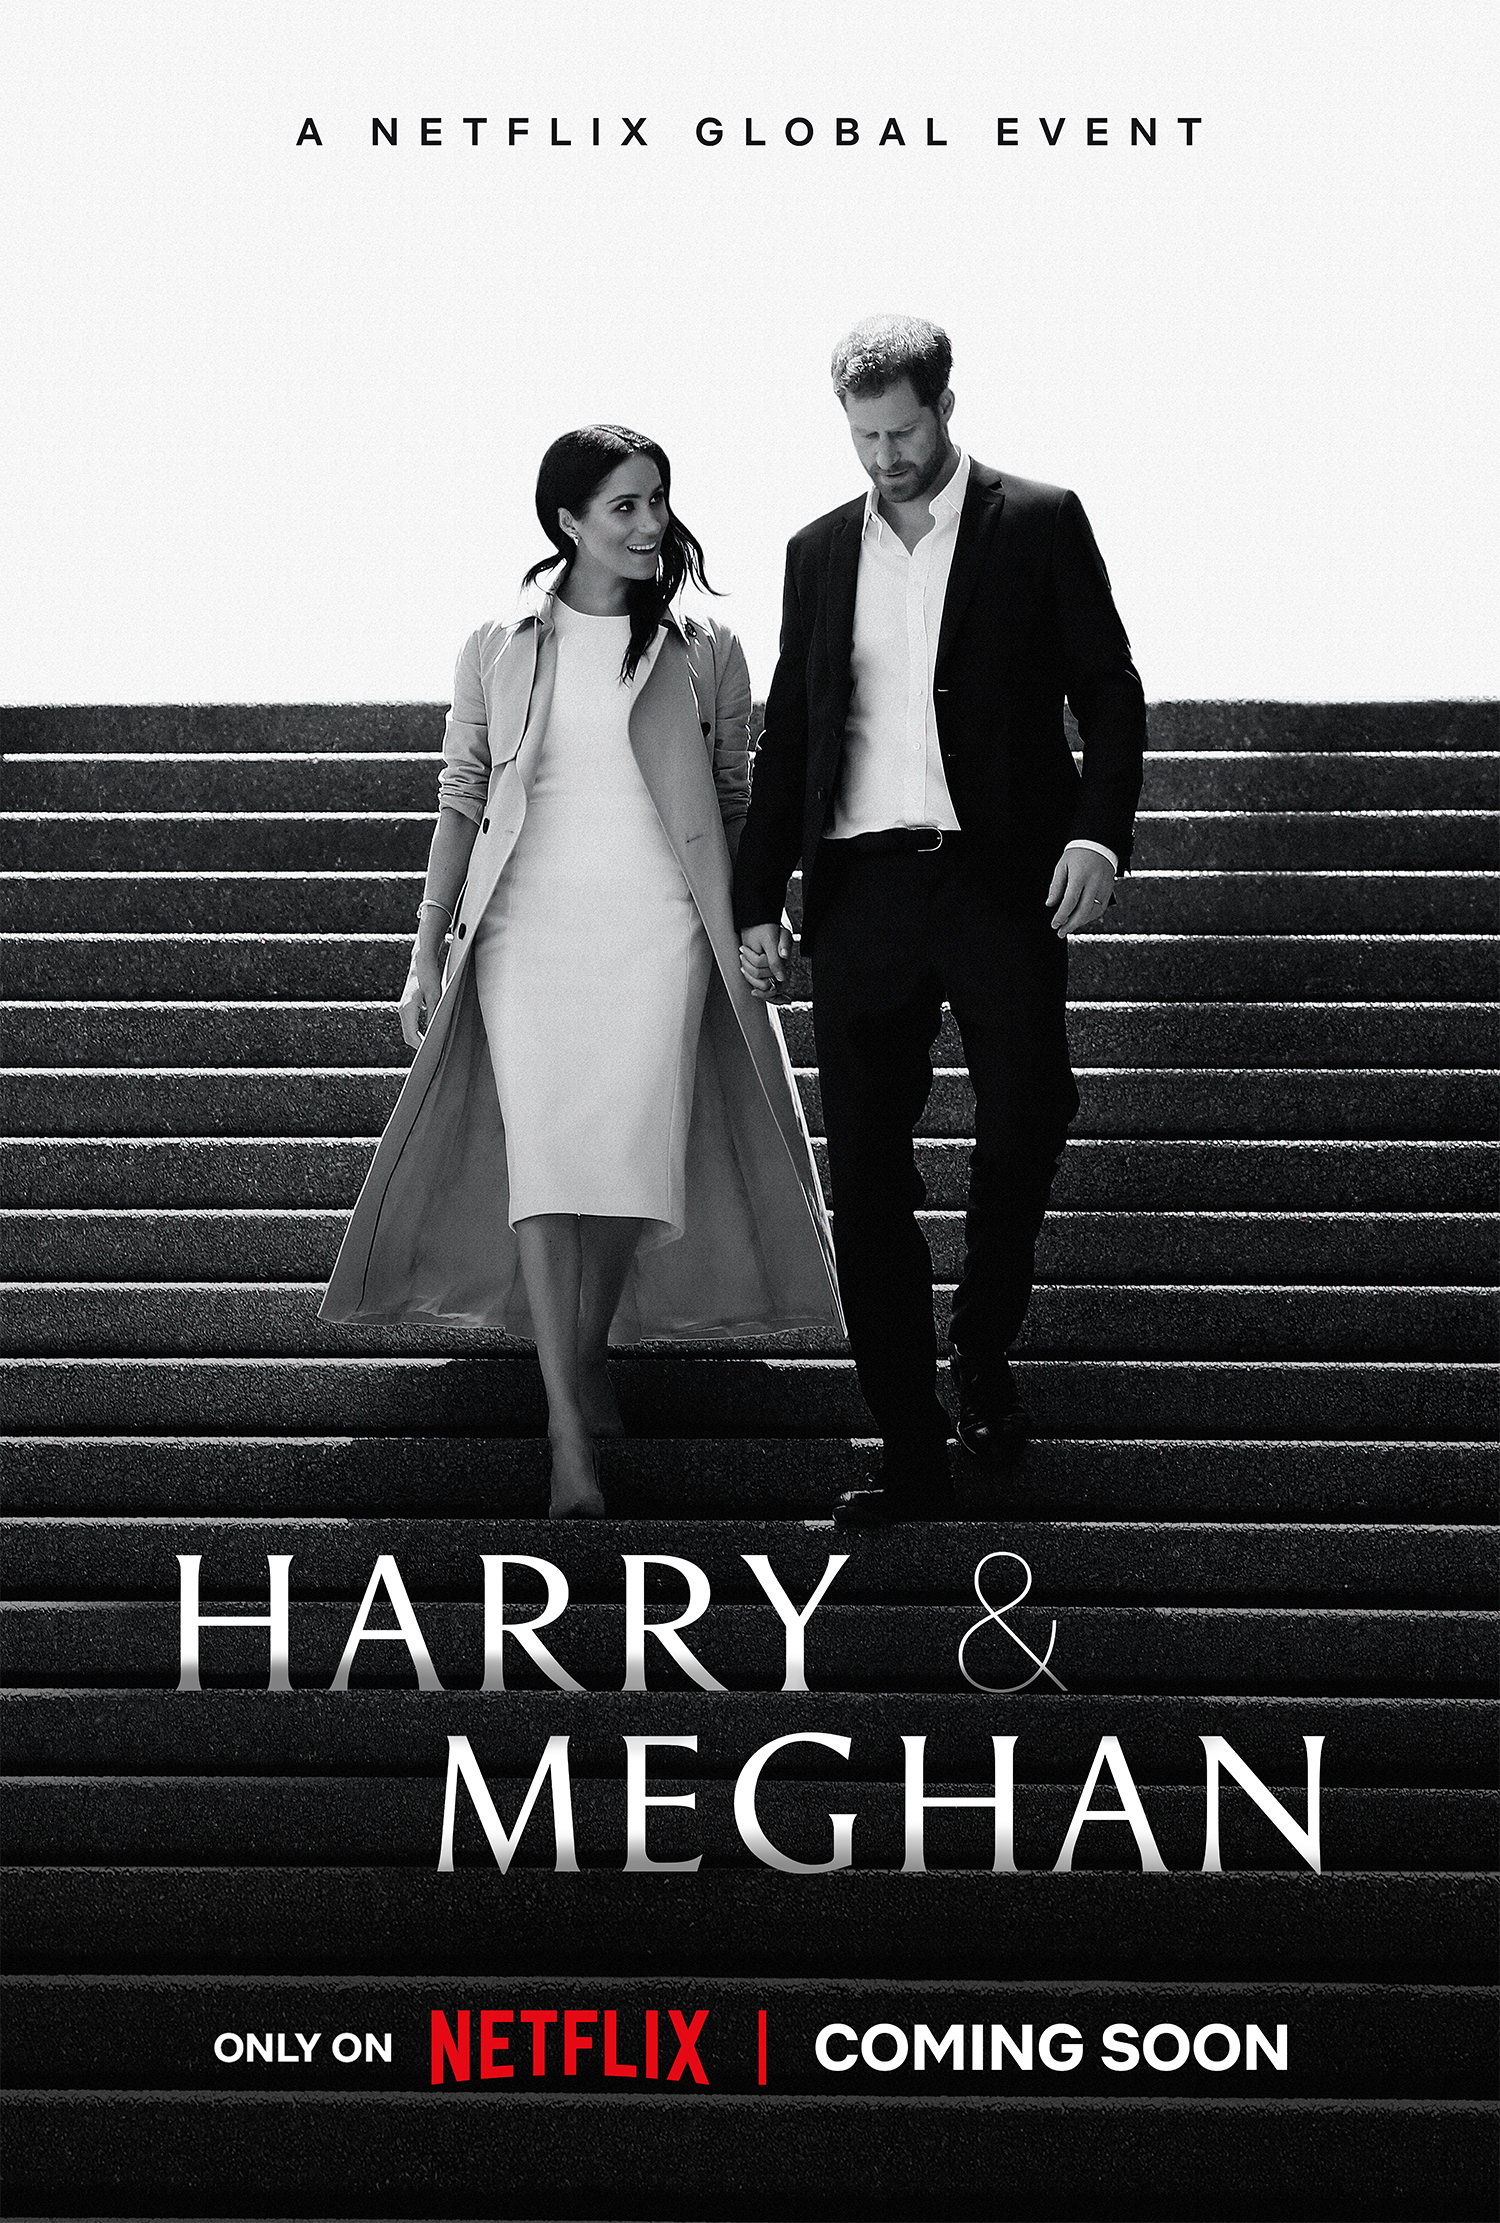 El documental "Harry & Meghan" se convirtió en el más visto de Spotify
(Netflix vía AP)